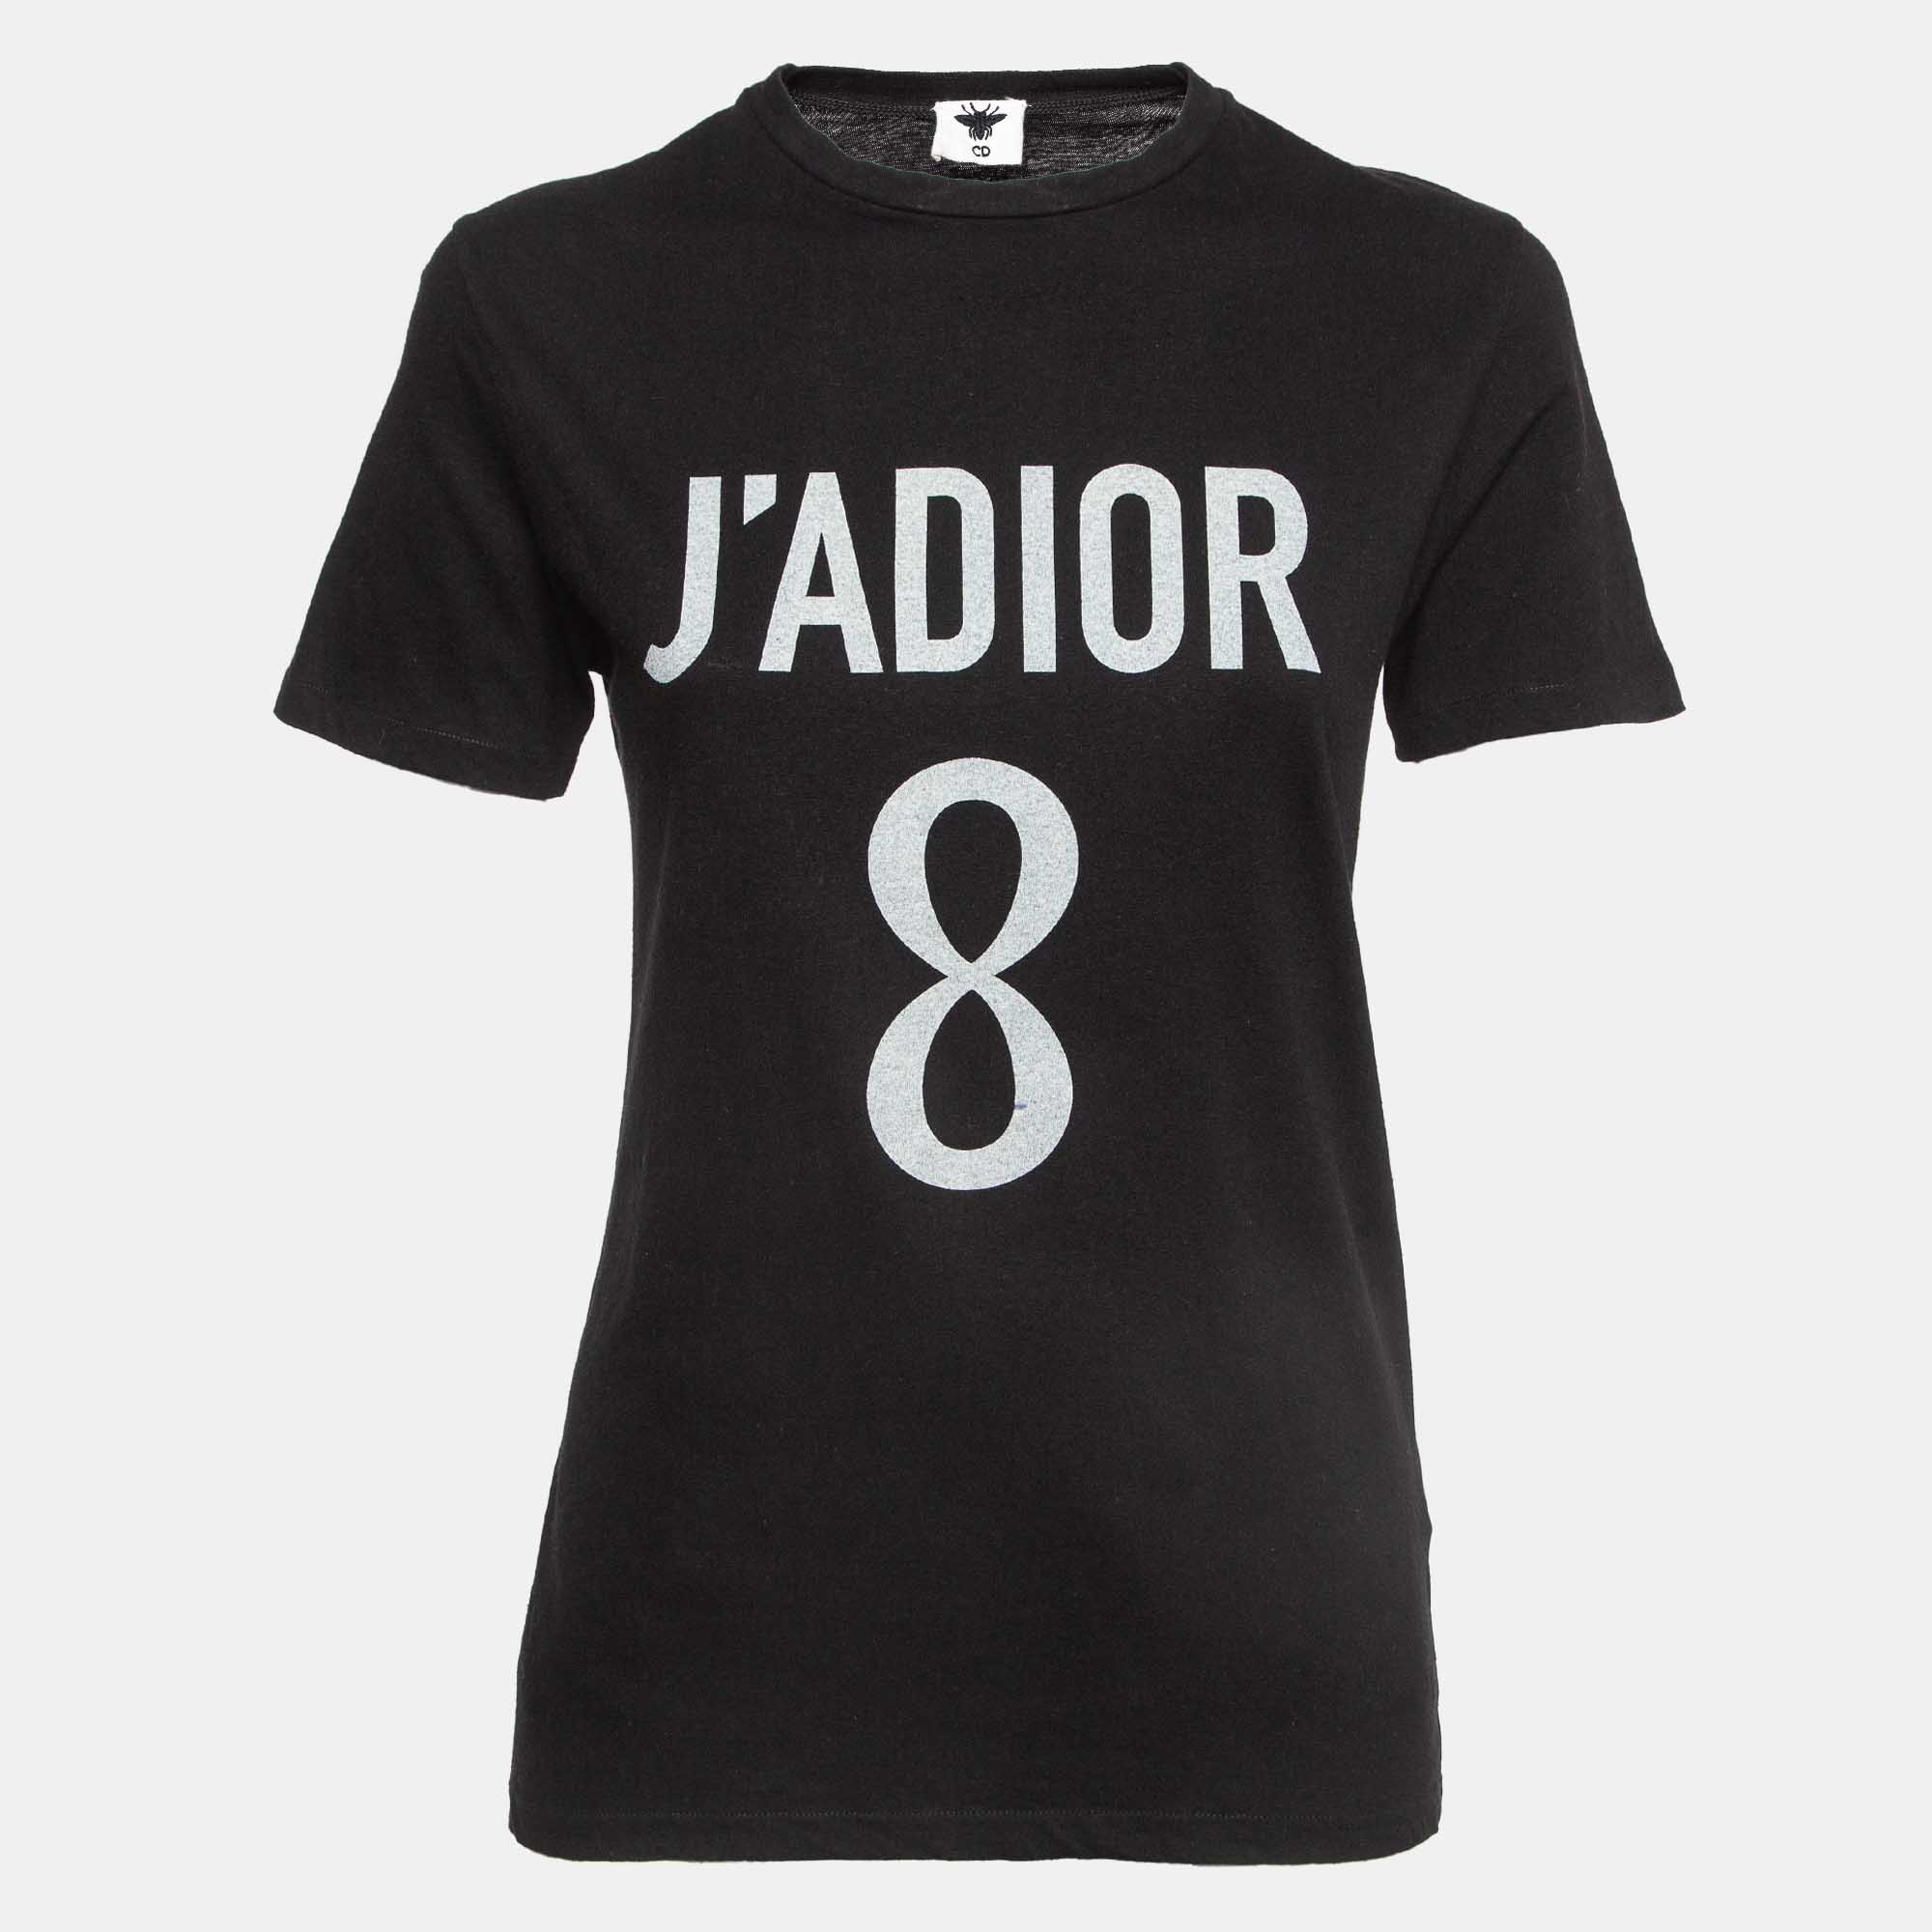 Dior black j'adior 8 jersey t-shirt xs